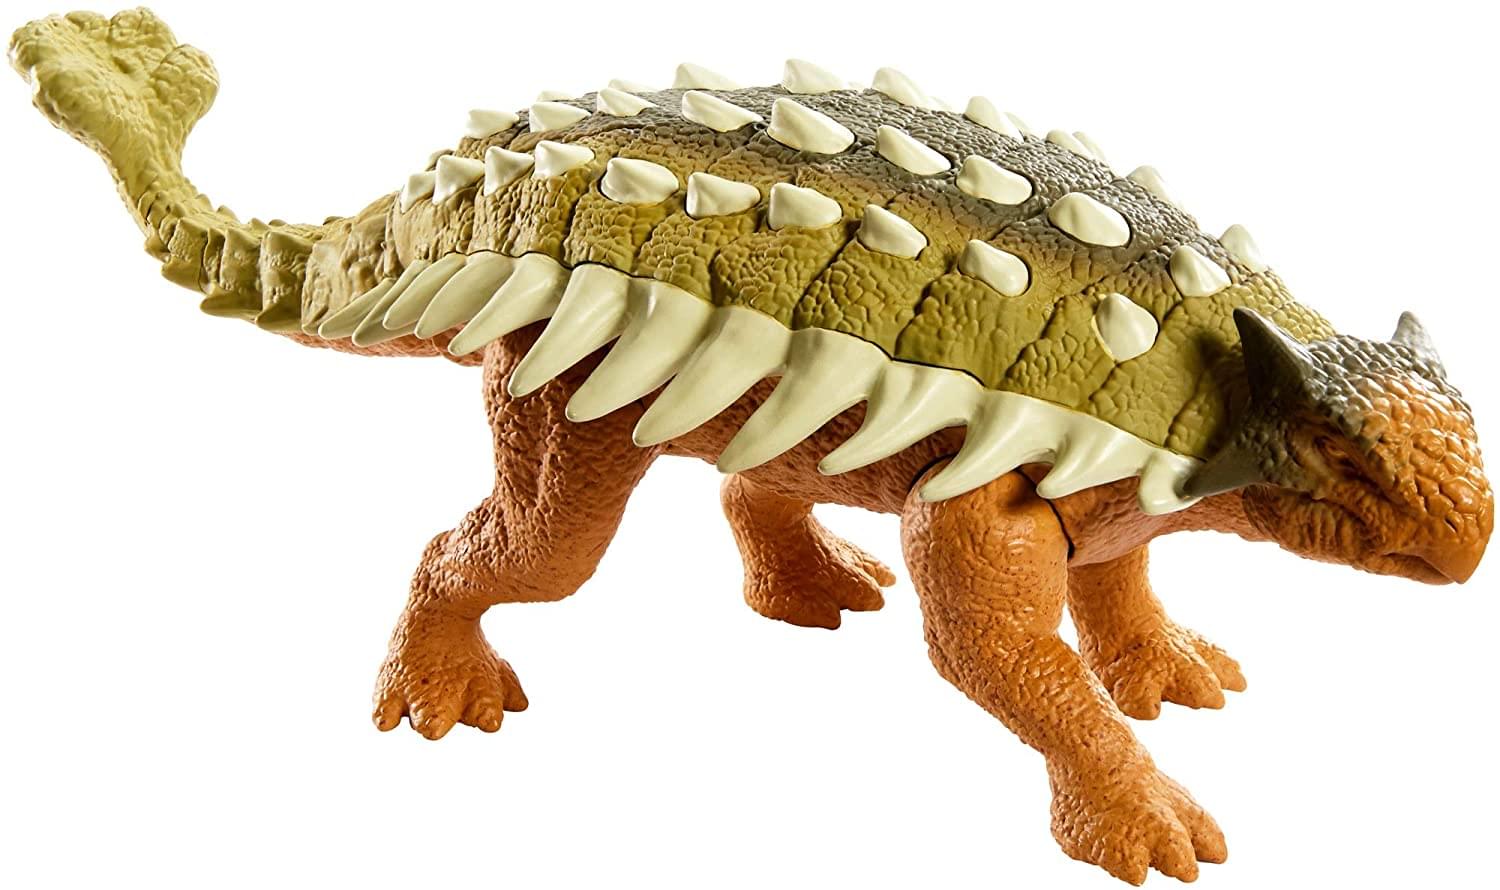 Jurassic World Roarivores Action Figure | Ankylosaurus